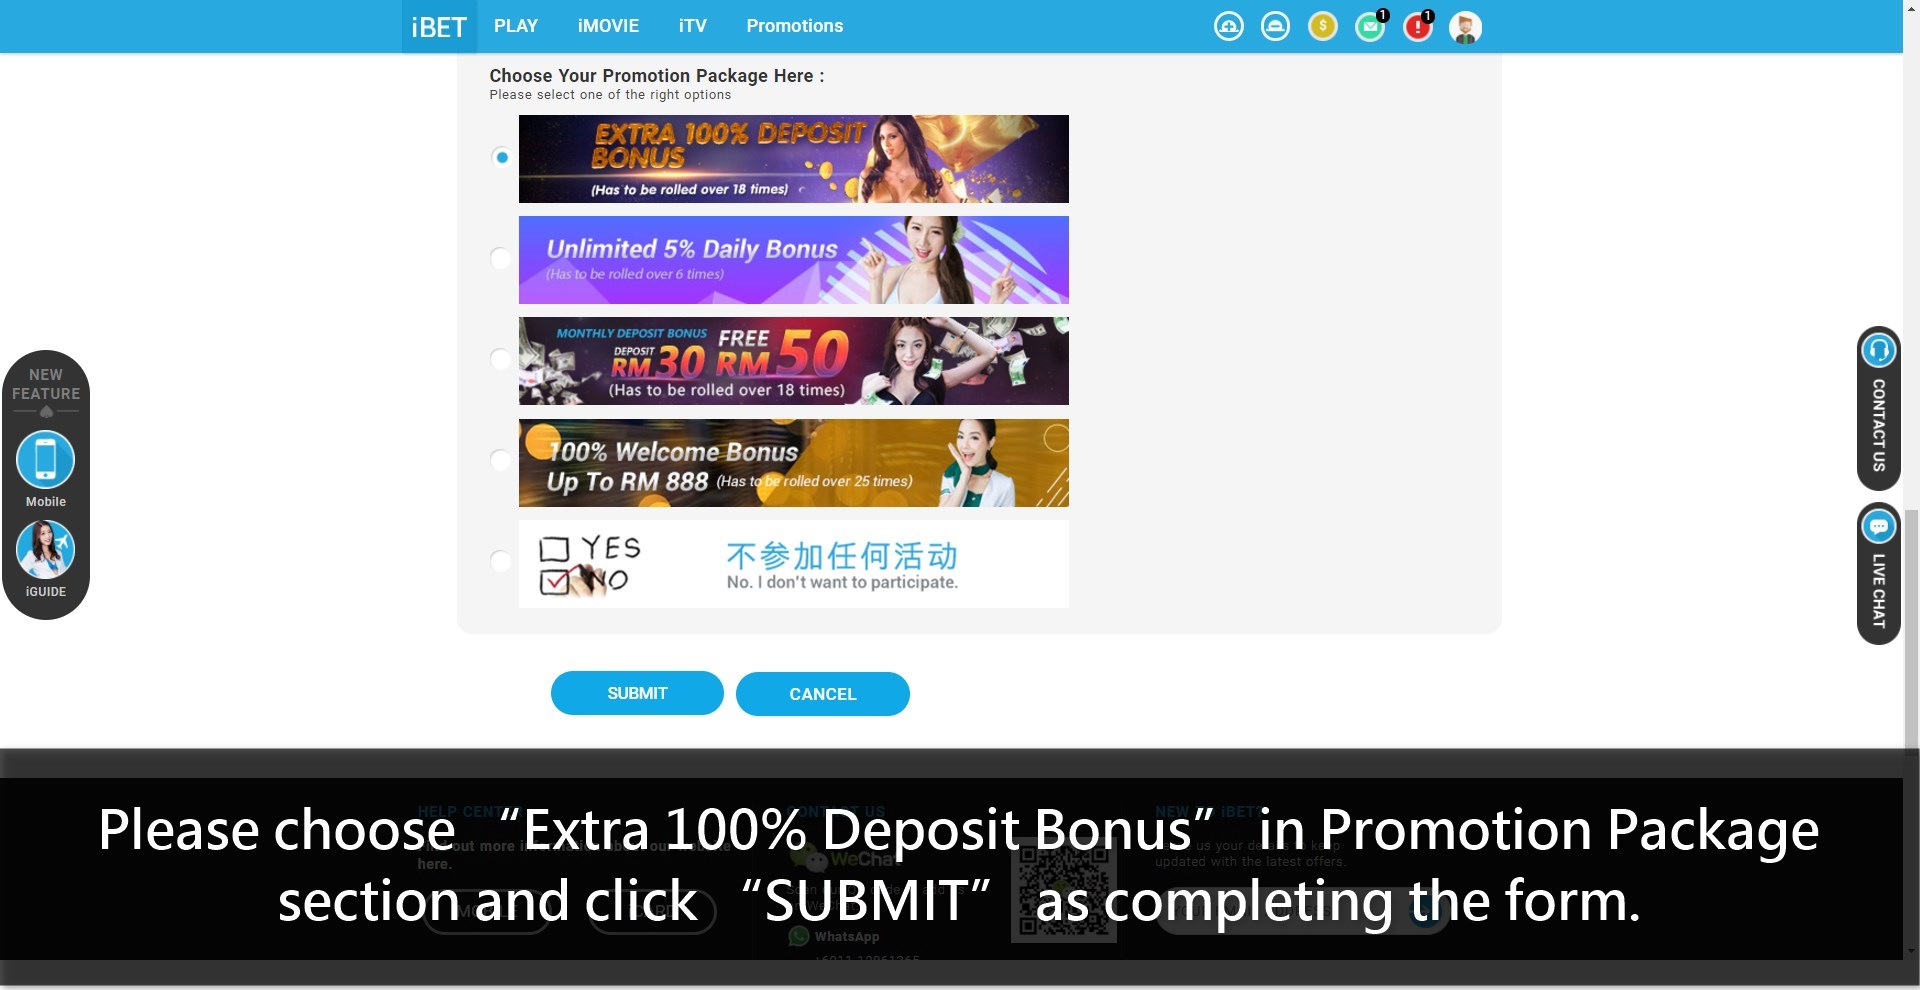 Casino588 teach iBET Extra 100% Deposit Bonus